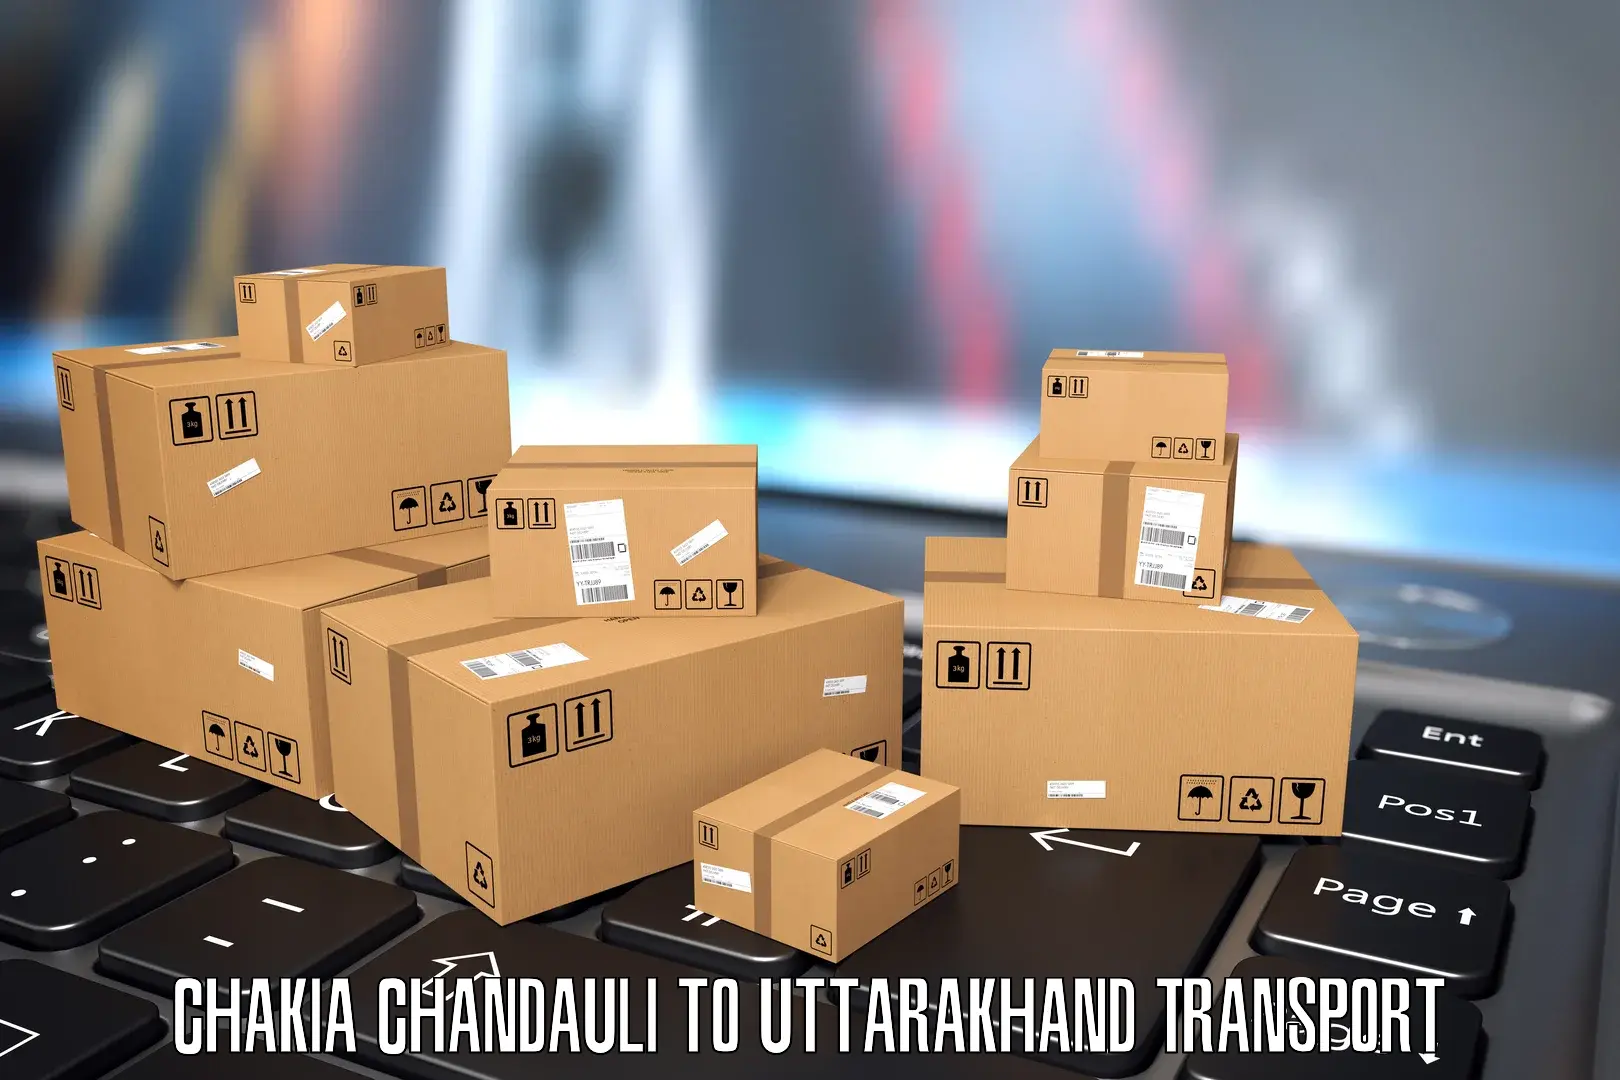 Transport in sharing Chakia Chandauli to Lansdowne